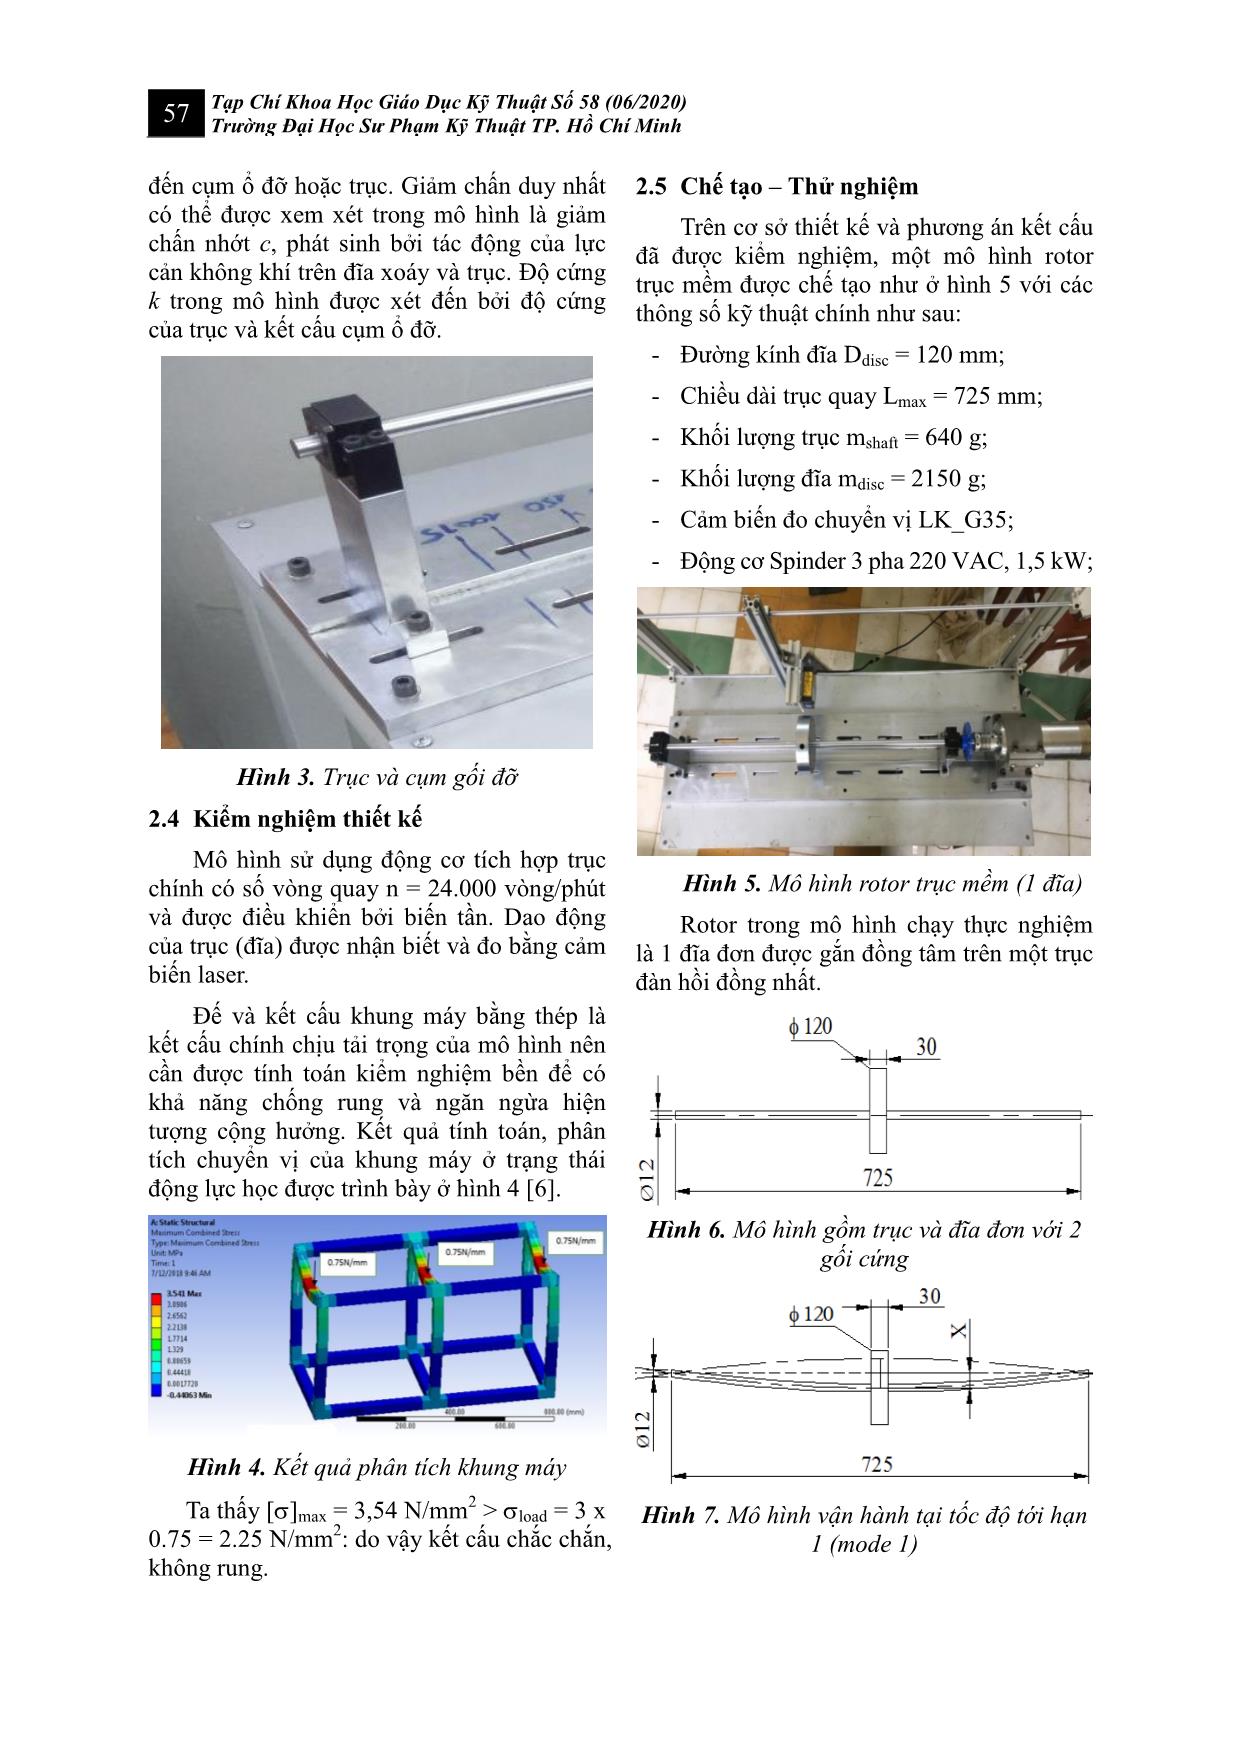 Nghiên cứu, chế tạo, thực nghiệm mô hình Rotor trục mềm trang 3